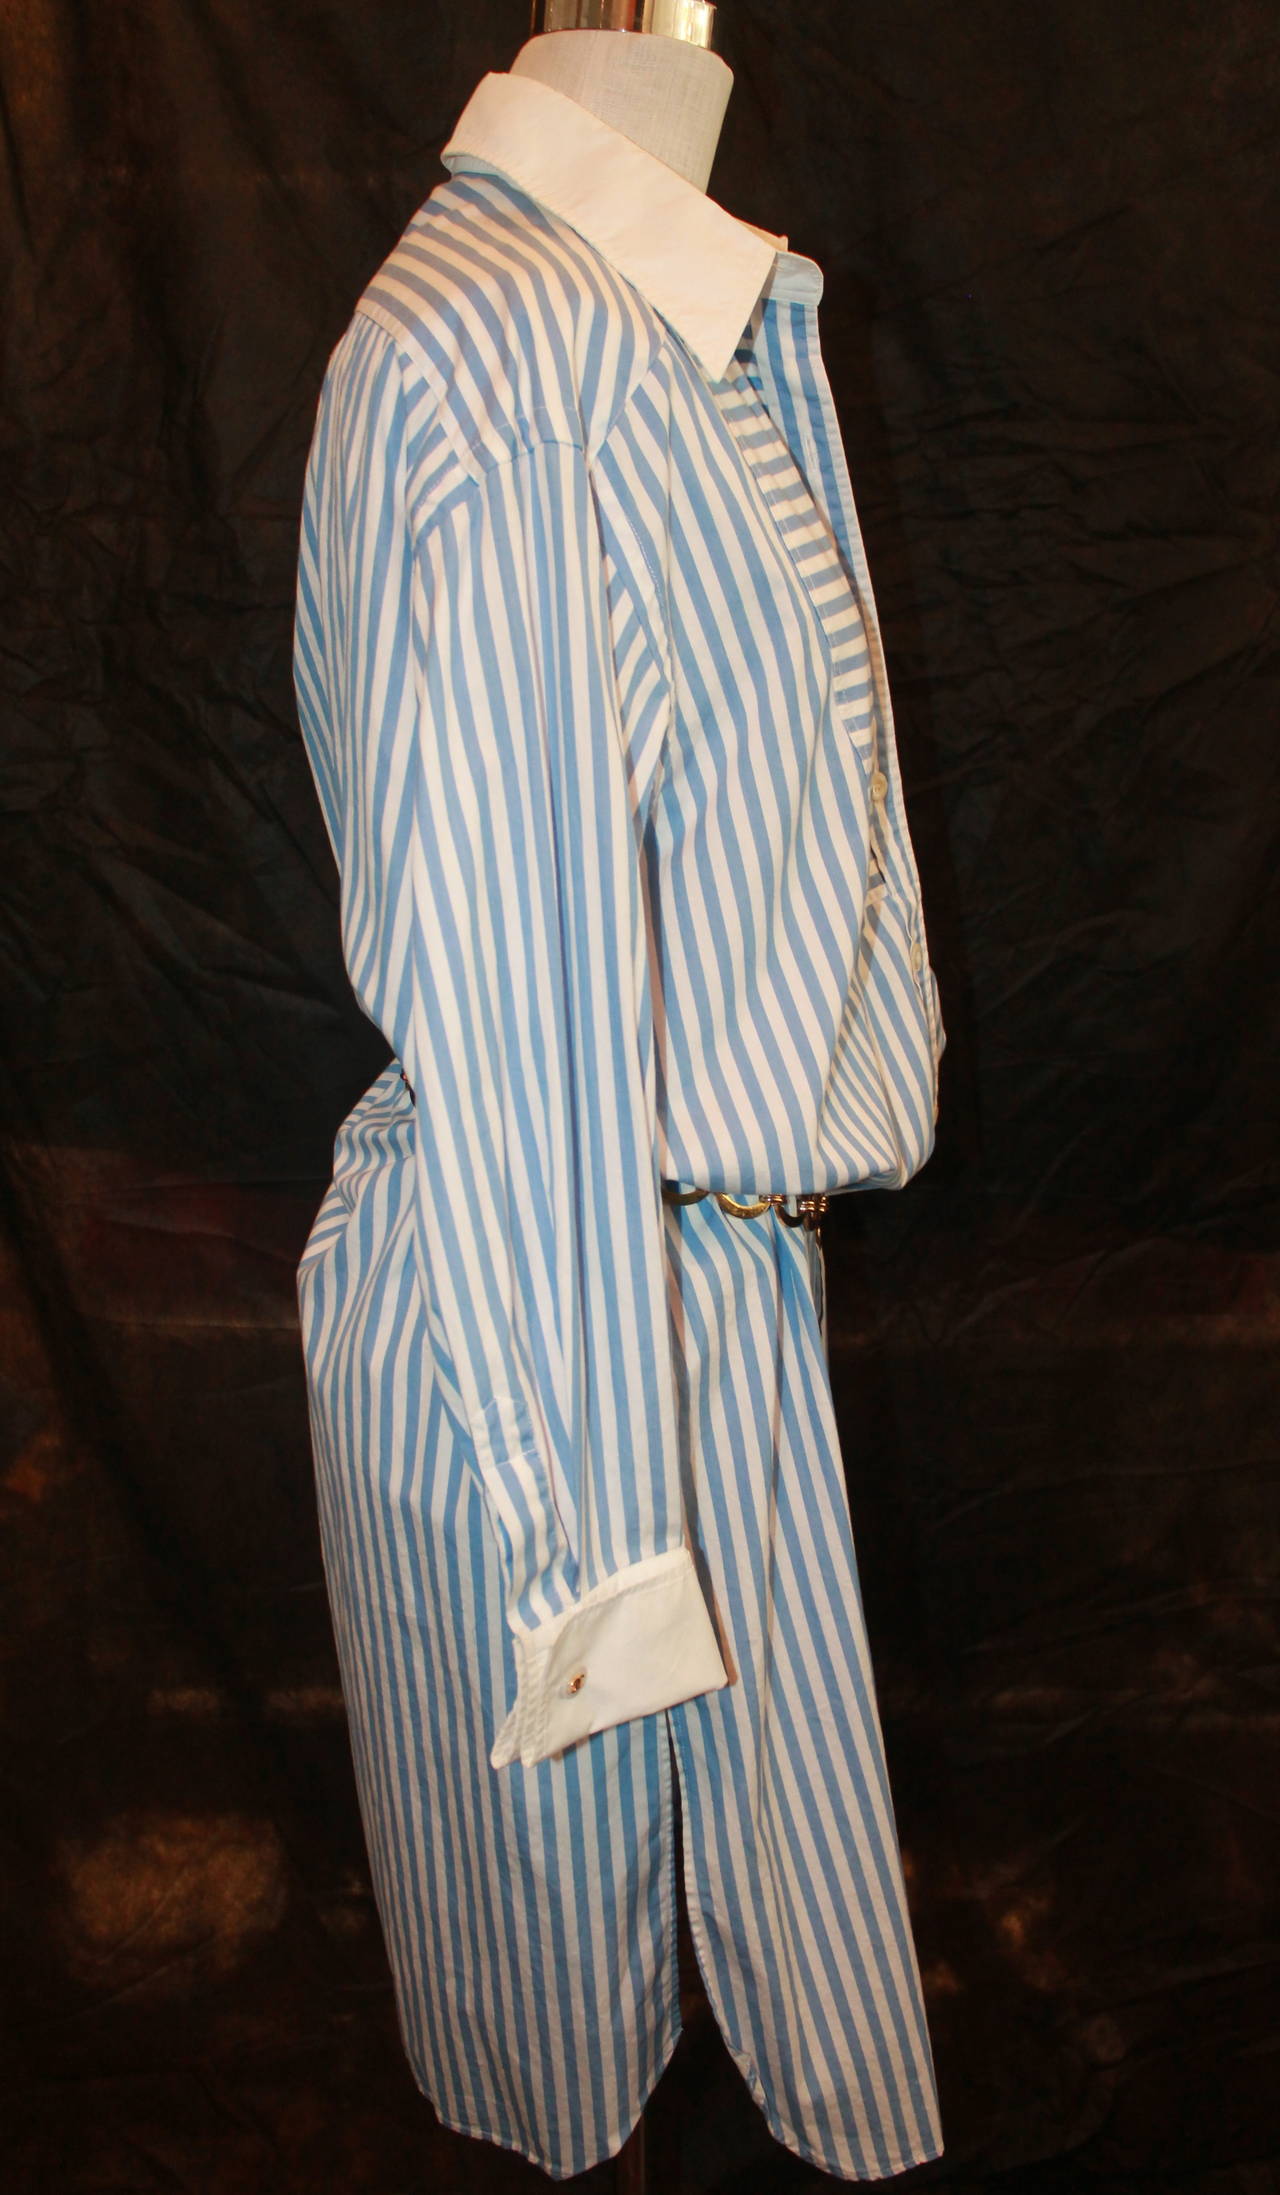 Women's Chanel Sky Blue & White Striped Shirt Dress - L